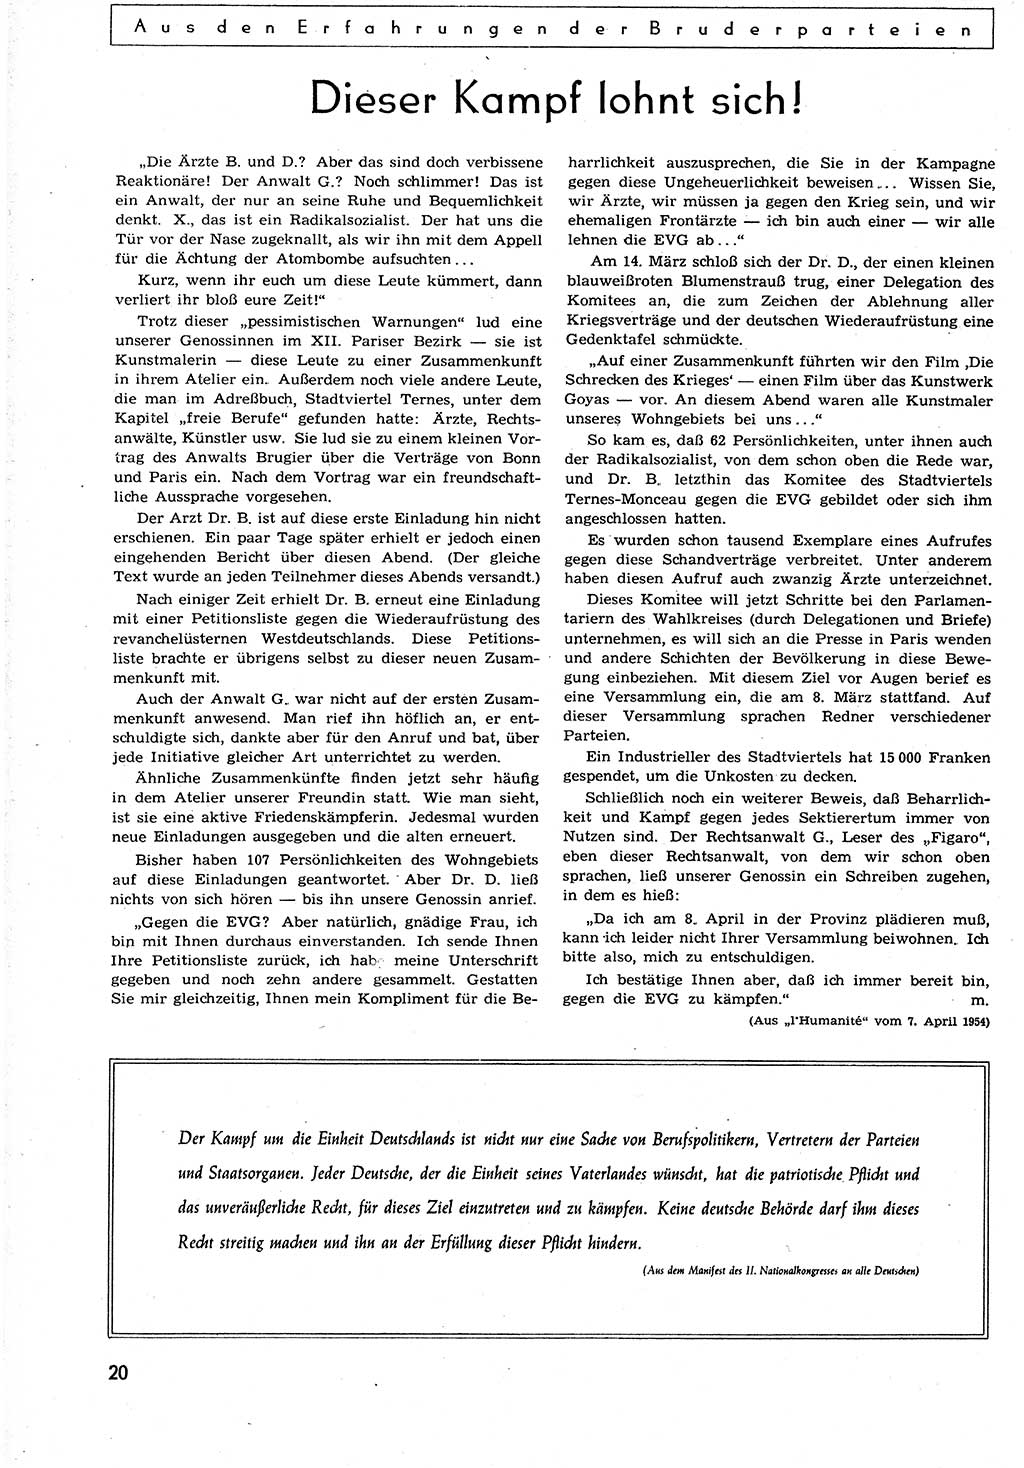 Neuer Weg (NW), Organ des Zentralkomitees (ZK) der SED (Sozialistische Einheitspartei Deutschlands) für alle Parteiarbeiter, 9. Jahrgang [Deutsche Demokratische Republik (DDR)] 1954, Heft 10/20 (NW ZK SED DDR 1954, H. 10/20)